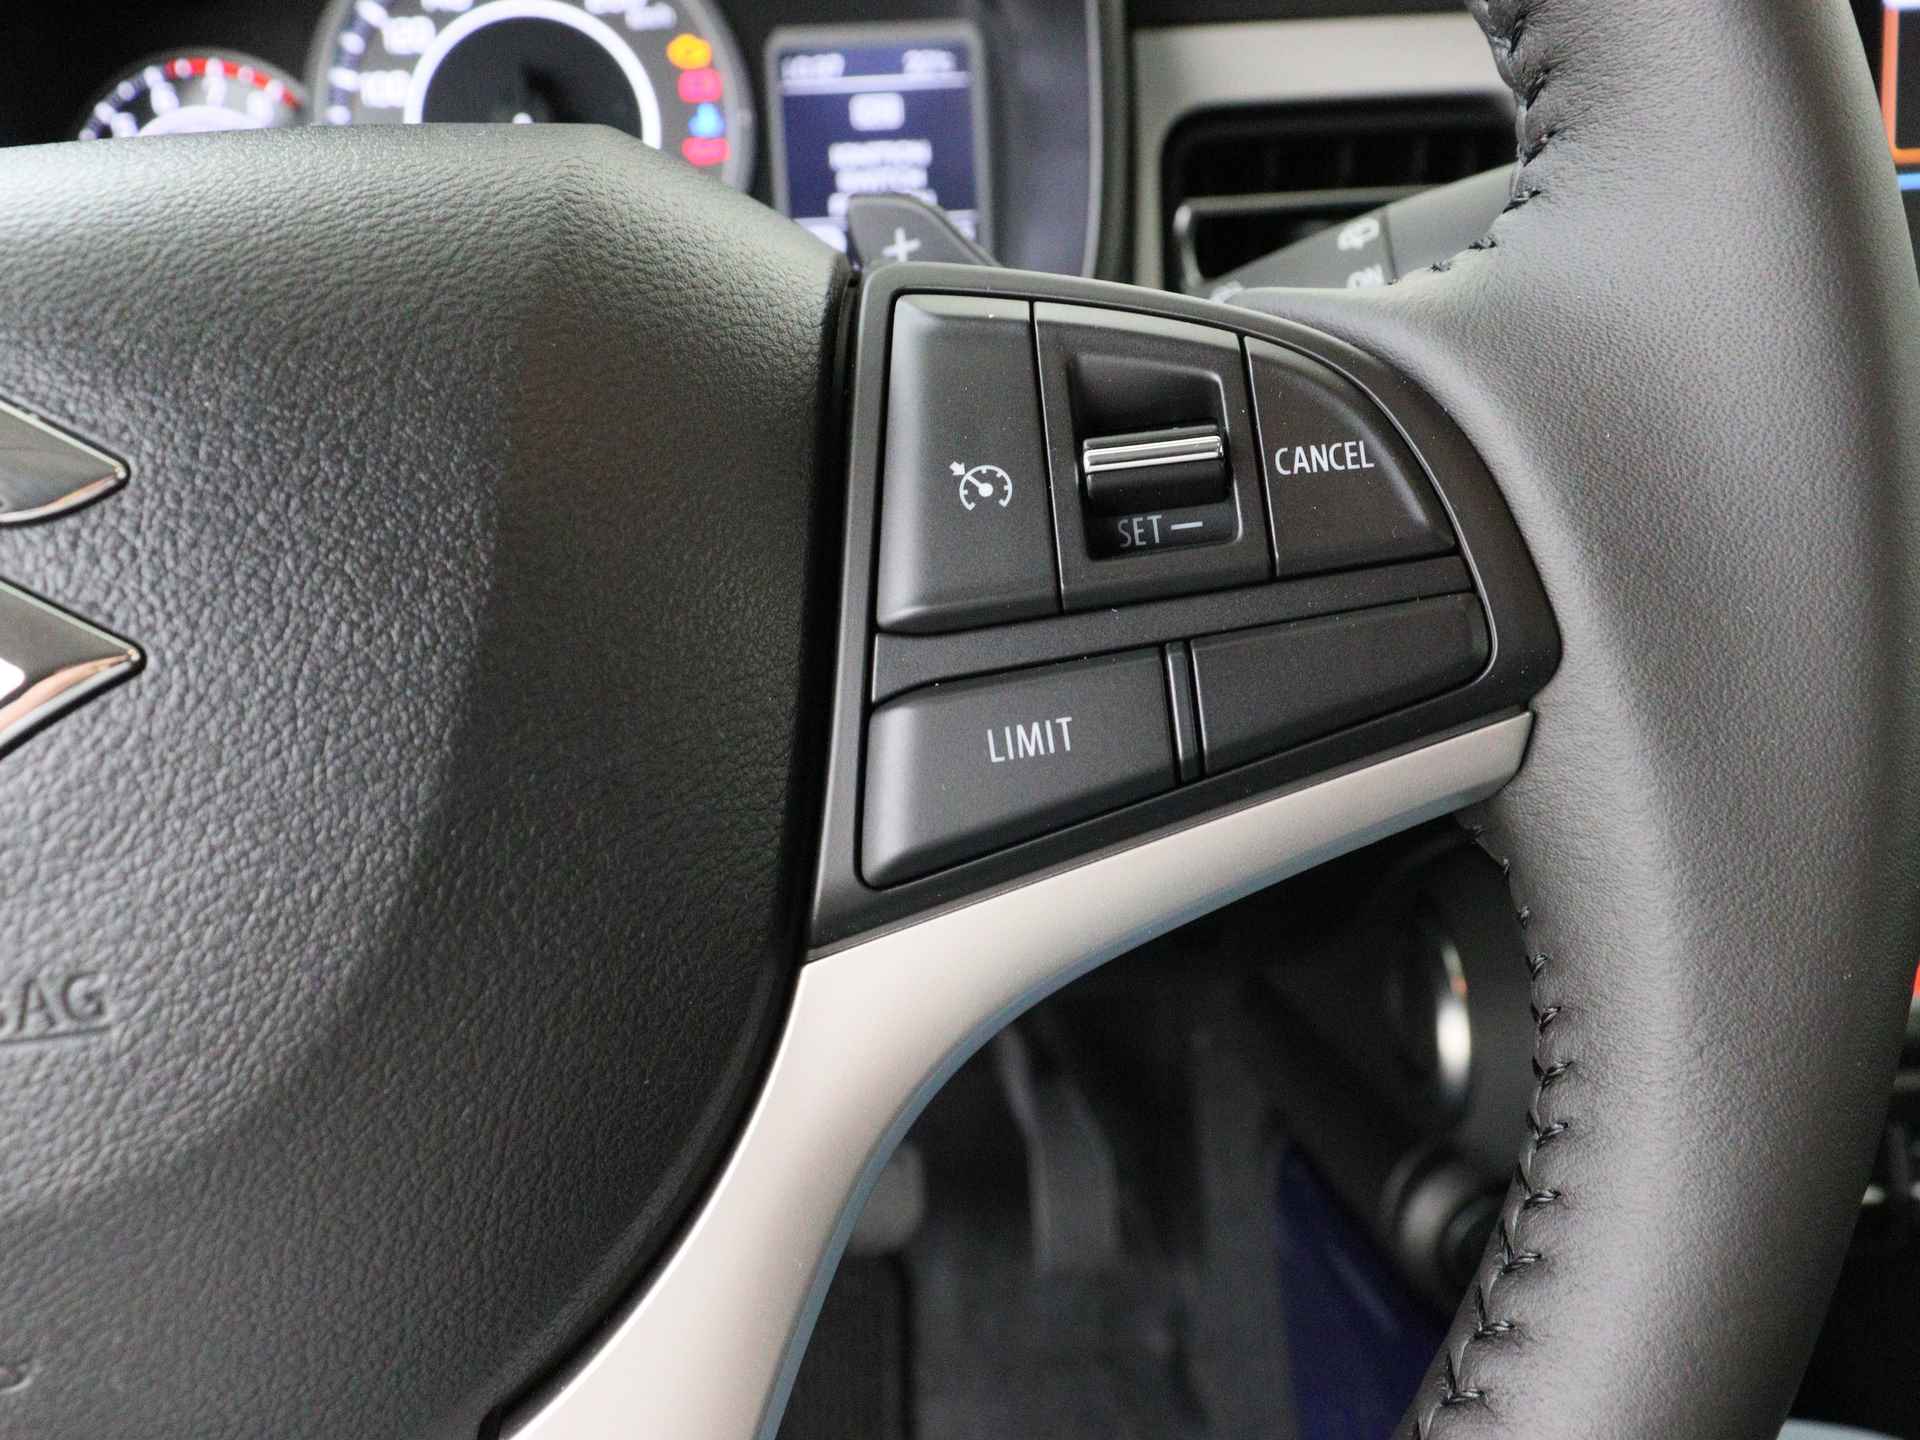 Suzuki Ignis 1.2 Smart Hybrid Style CVT *** DEMO NIET BESCHIKBAAR VOOR VERKOOP *** I Navigatie I Climate Control I Cruise Control I Camera I USB I - 20/37